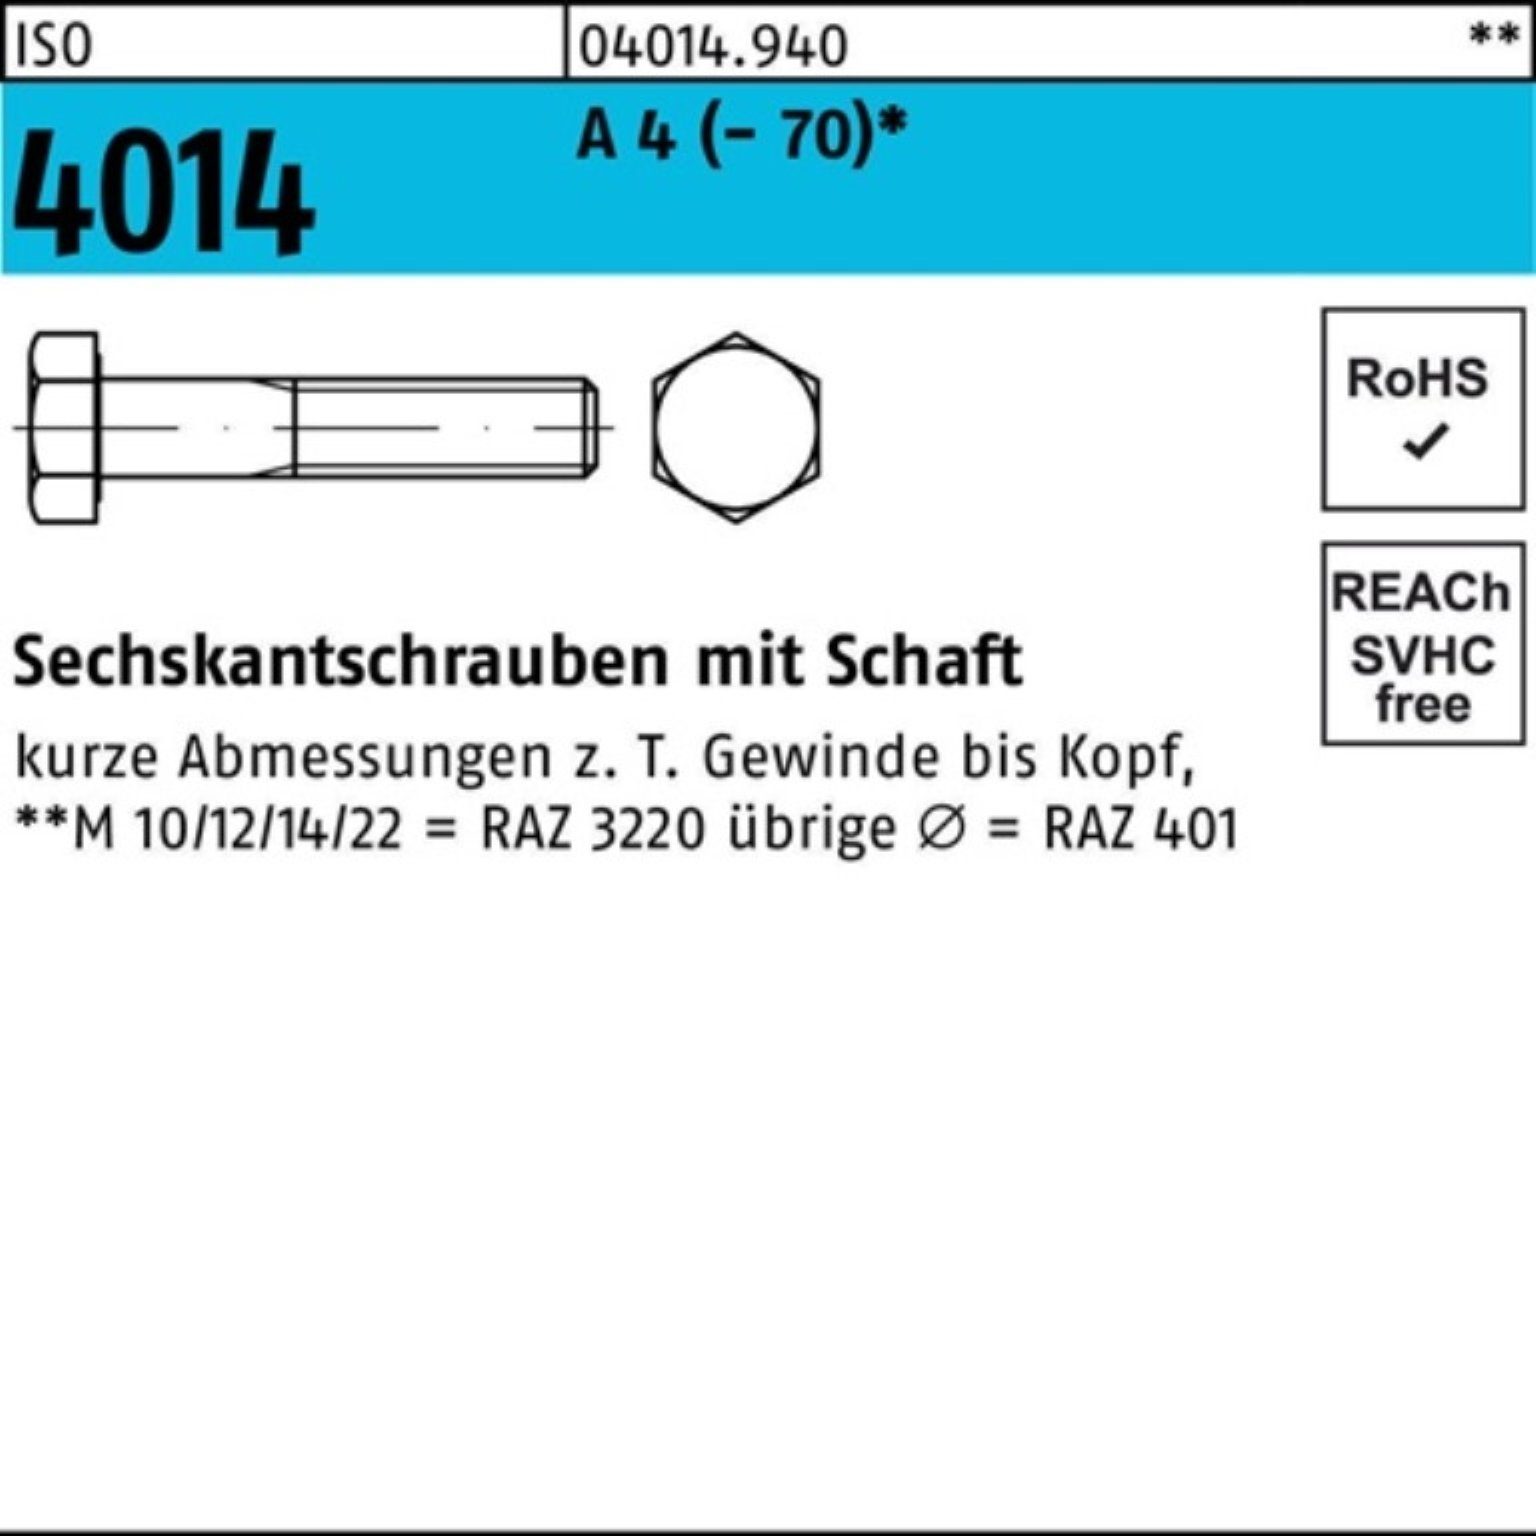 Voller! Bufab Sechskantschraube 100er A Sechskantschraube 4014 Schaft (70) Pack 55 M8x ISO 100 4 St